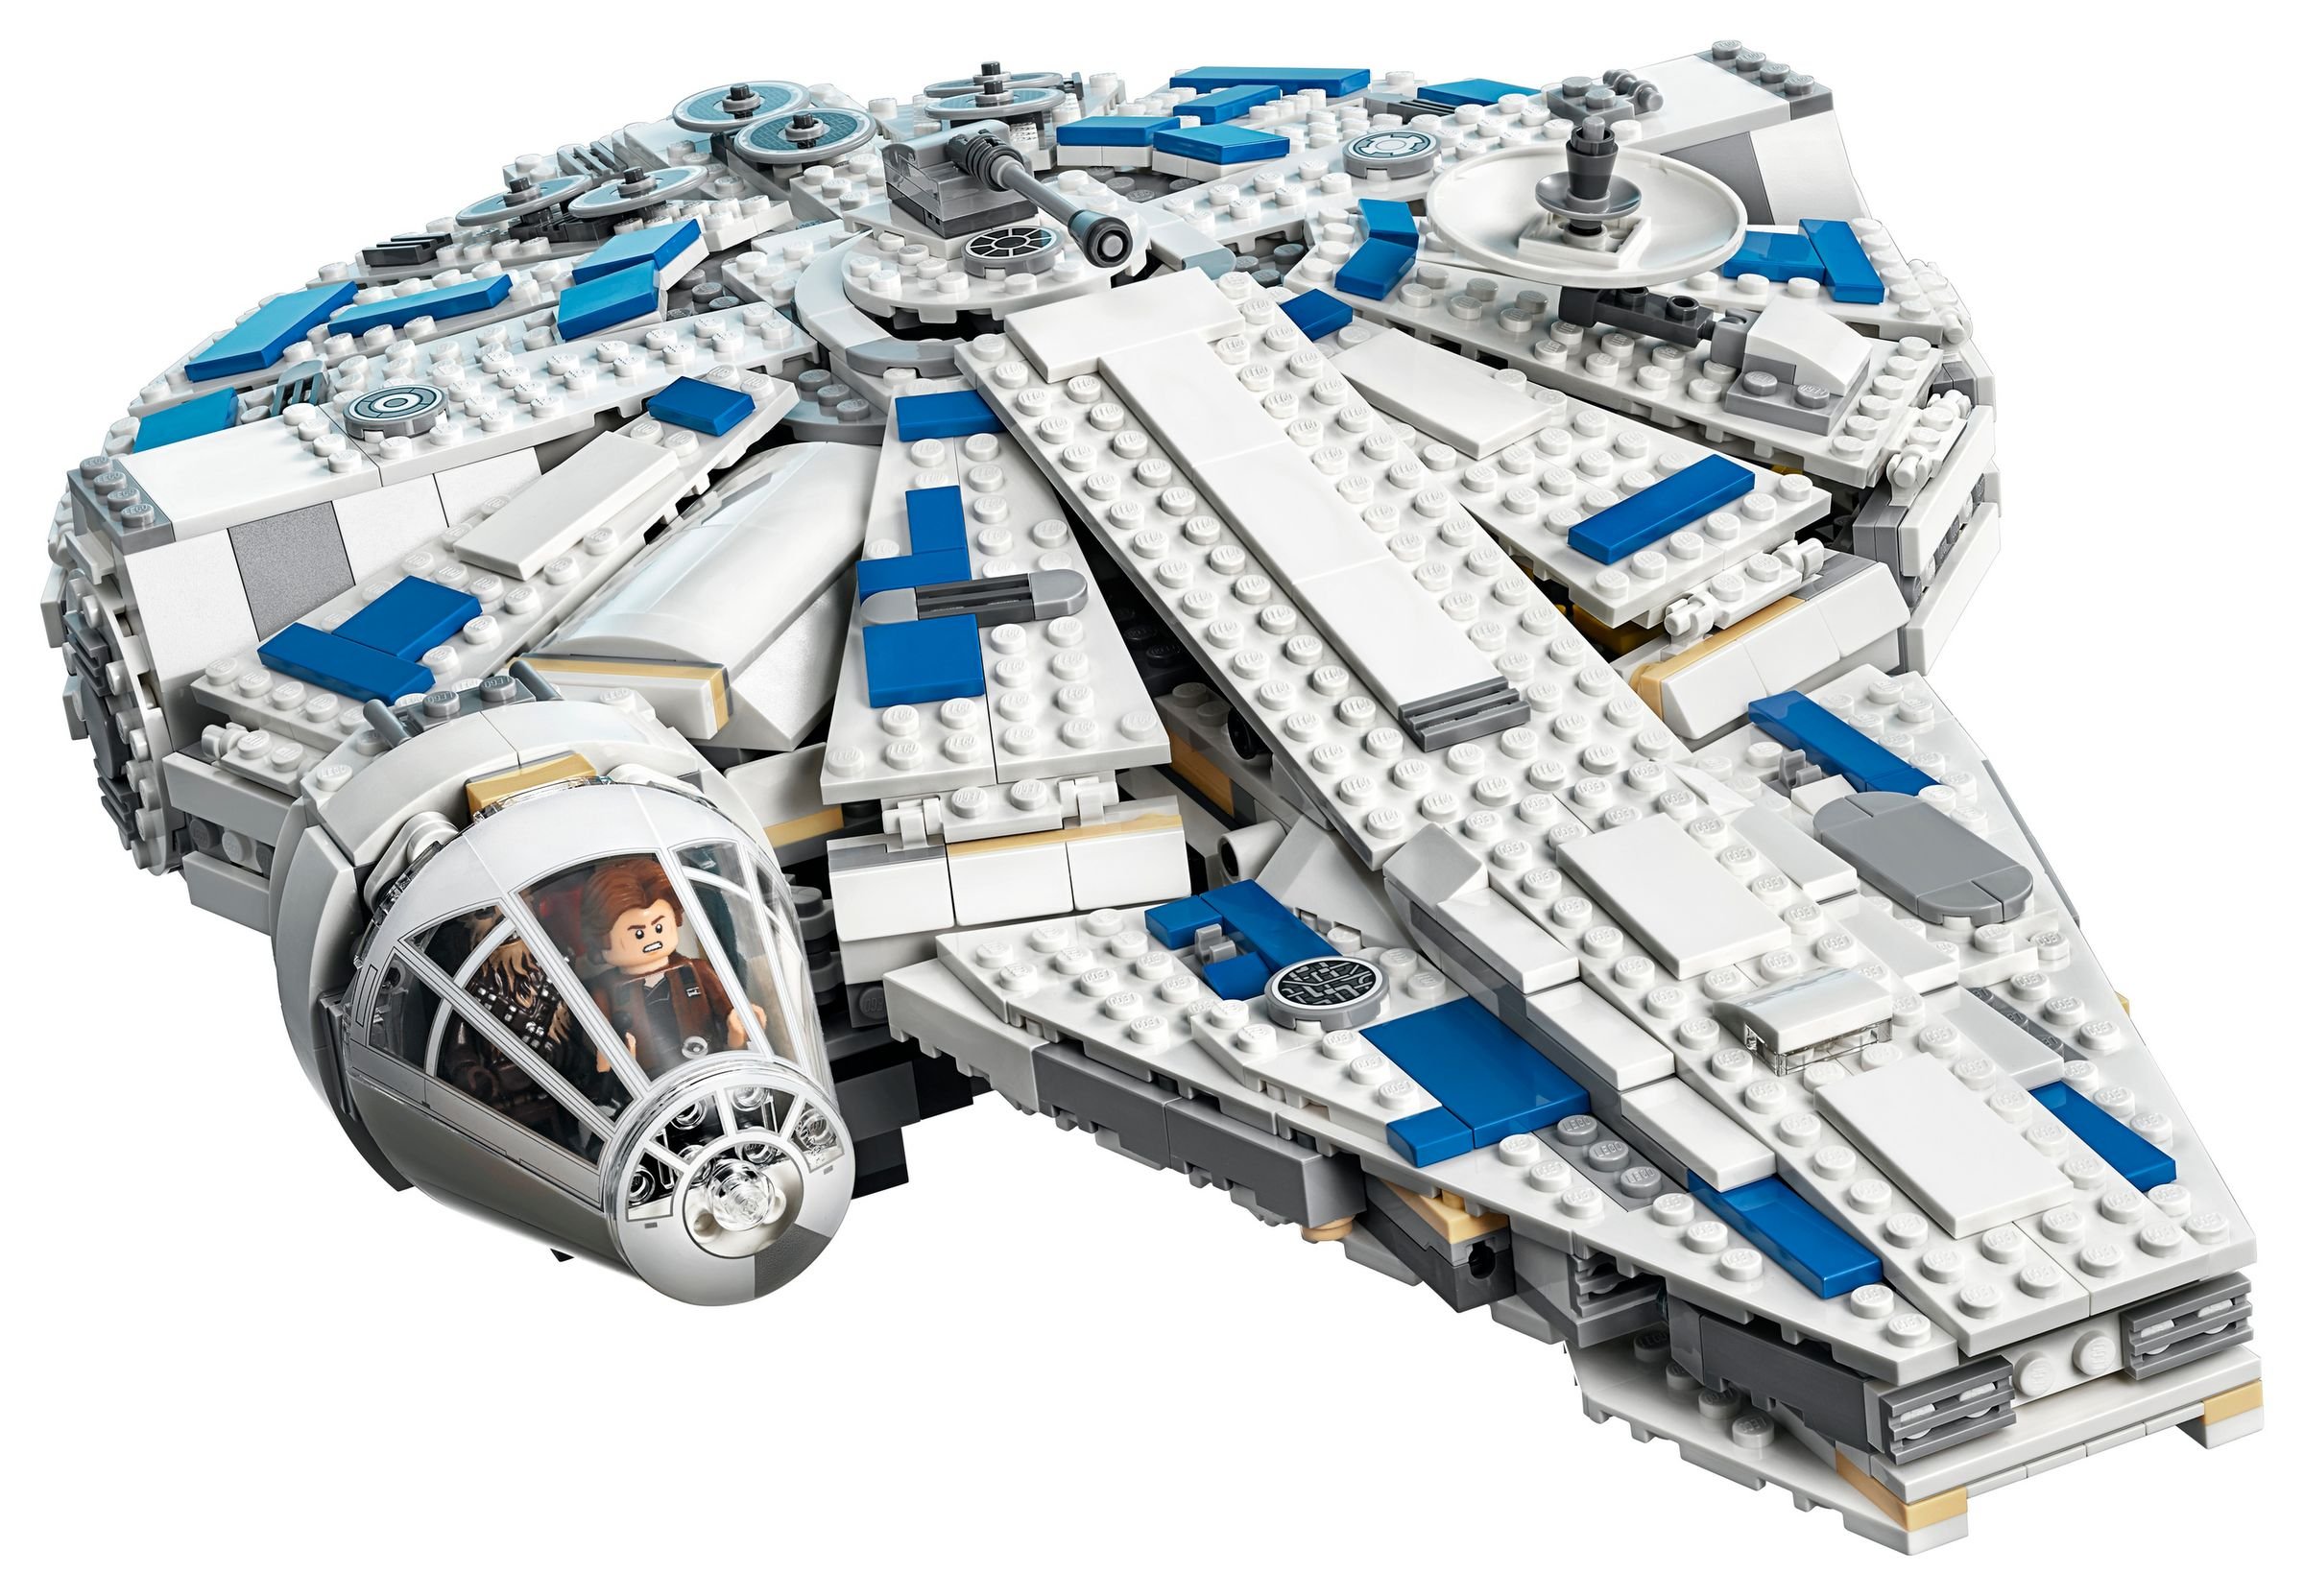 LEGO Star Wars 75212 Kessel Run Millennium Falcon™ LEGO_75212_alt2.jpg